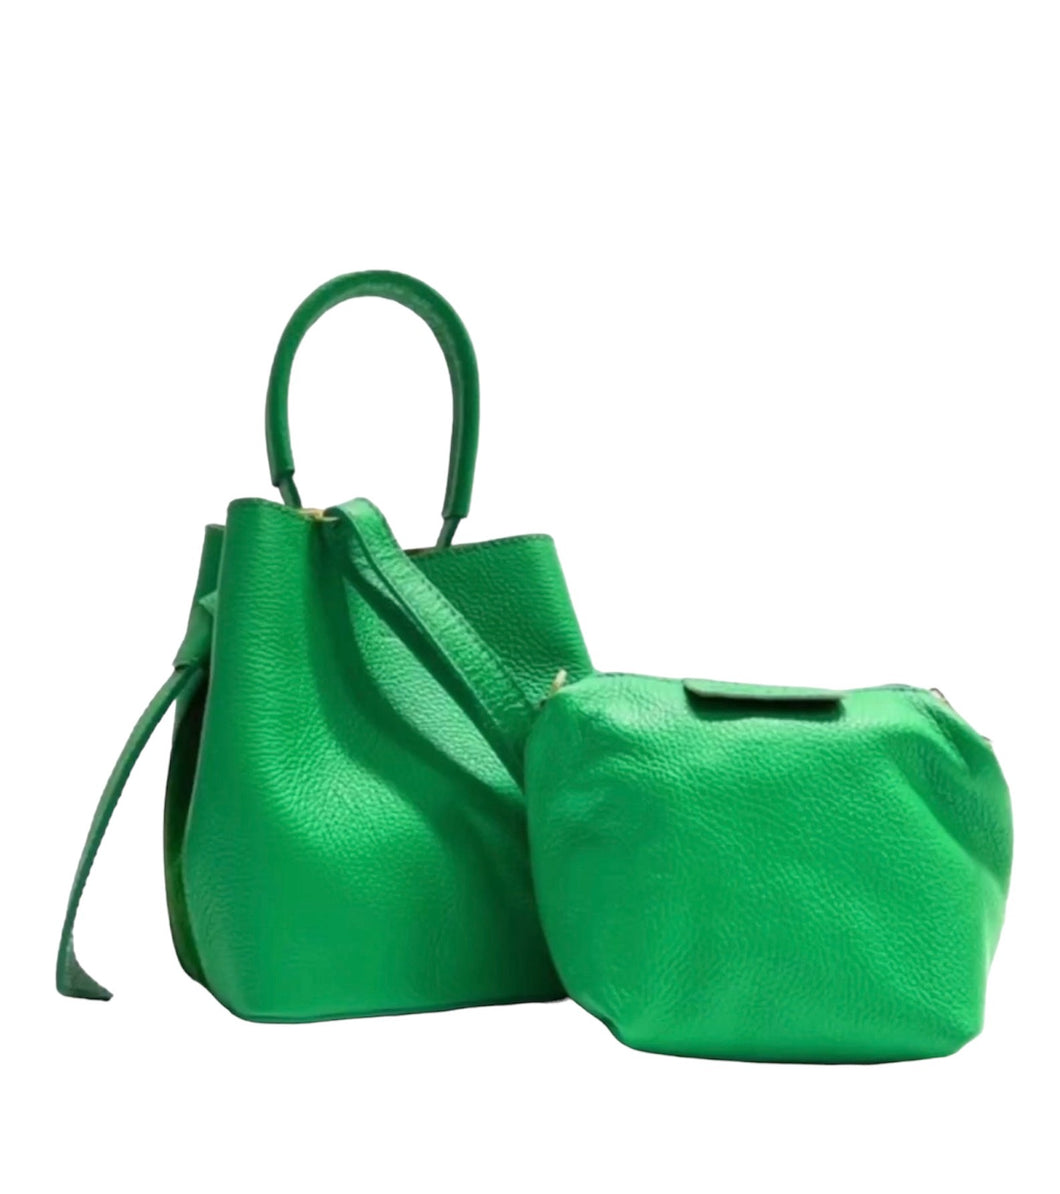 Groene Tas Piccolino wordt geleverd inclusief mini tas met ritssluiting, welke tevens als schoudertas of cross body te dragen is. Twee prachtige tasjes voor de prijs van één. Lederen Tas Piccolino is verkrijgbaar in verschillende kleuren: Beige, Groen.